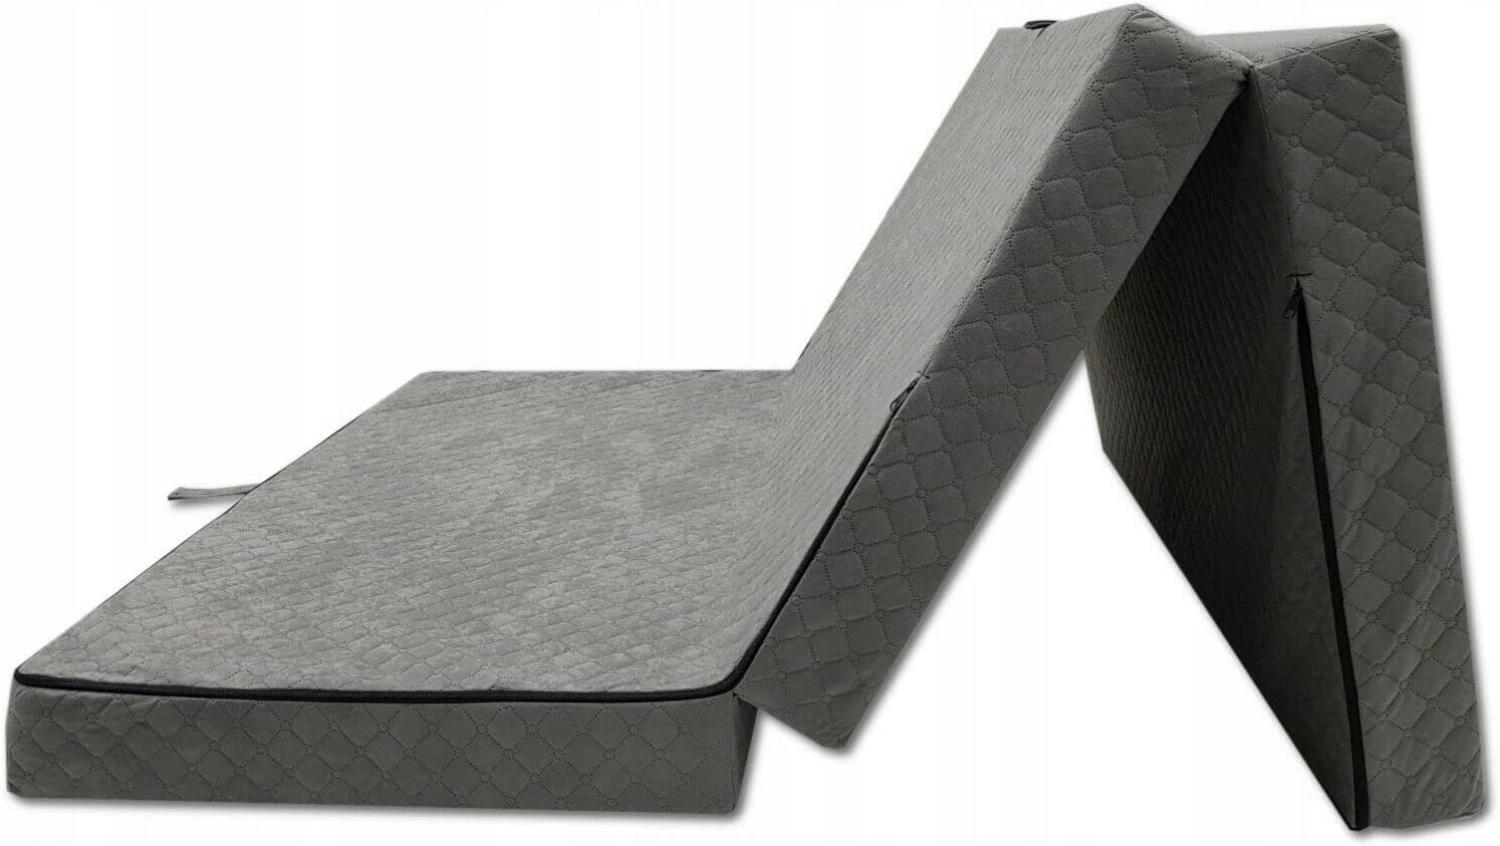 Odolplusz Premium Klappmatratze faltbar klappbar Gästematratze - Made IN EU - 200x120x10cm - als Matratze Gästebett einsetzbar (Grau) Bild 1